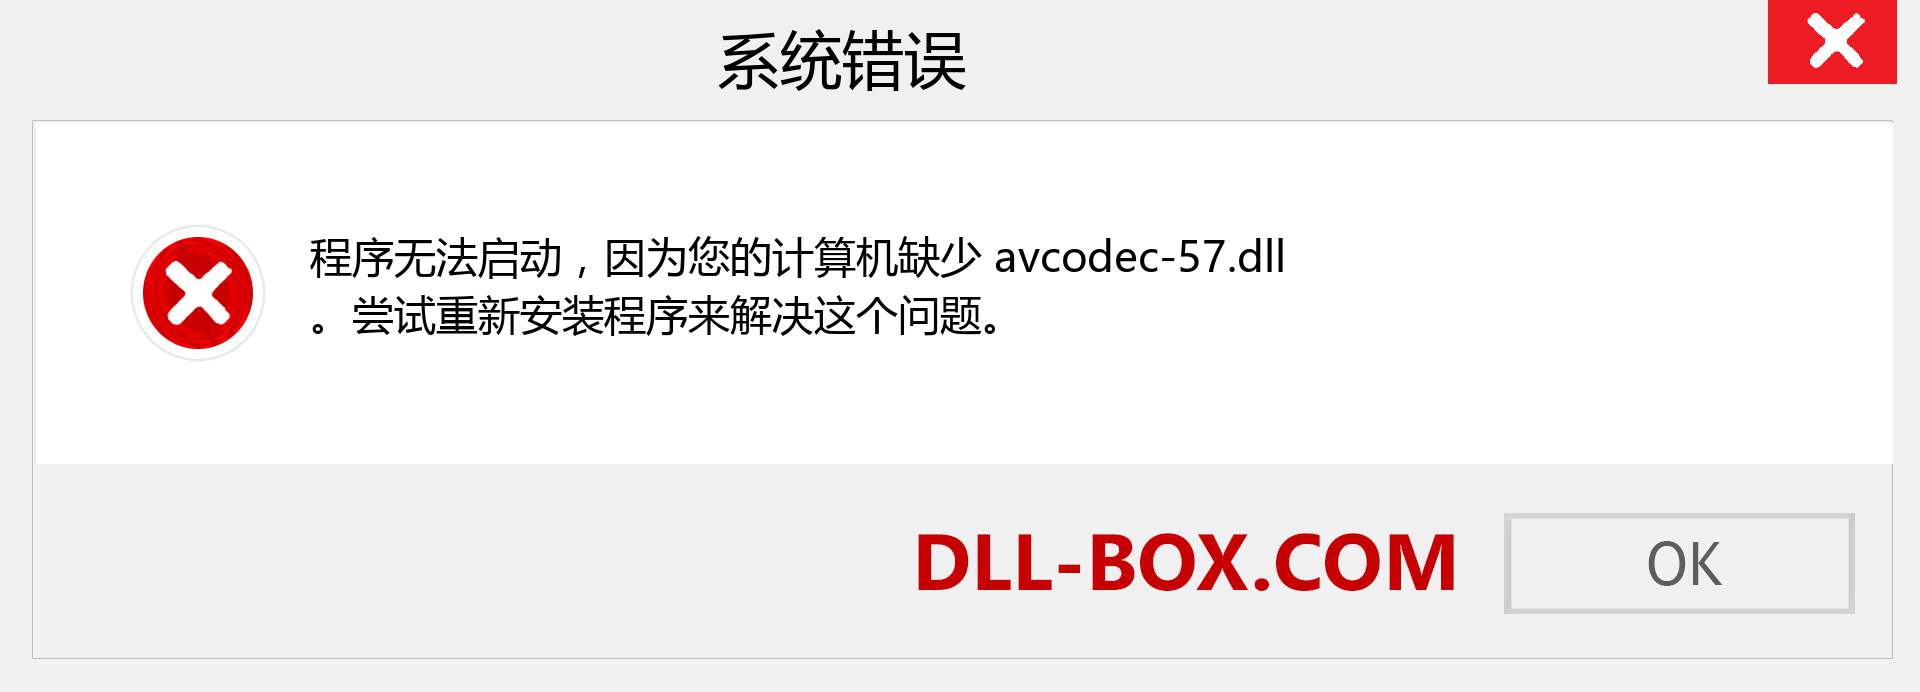 avcodec-57.dll 文件丢失？。 适用于 Windows 7、8、10 的下载 - 修复 Windows、照片、图像上的 avcodec-57 dll 丢失错误